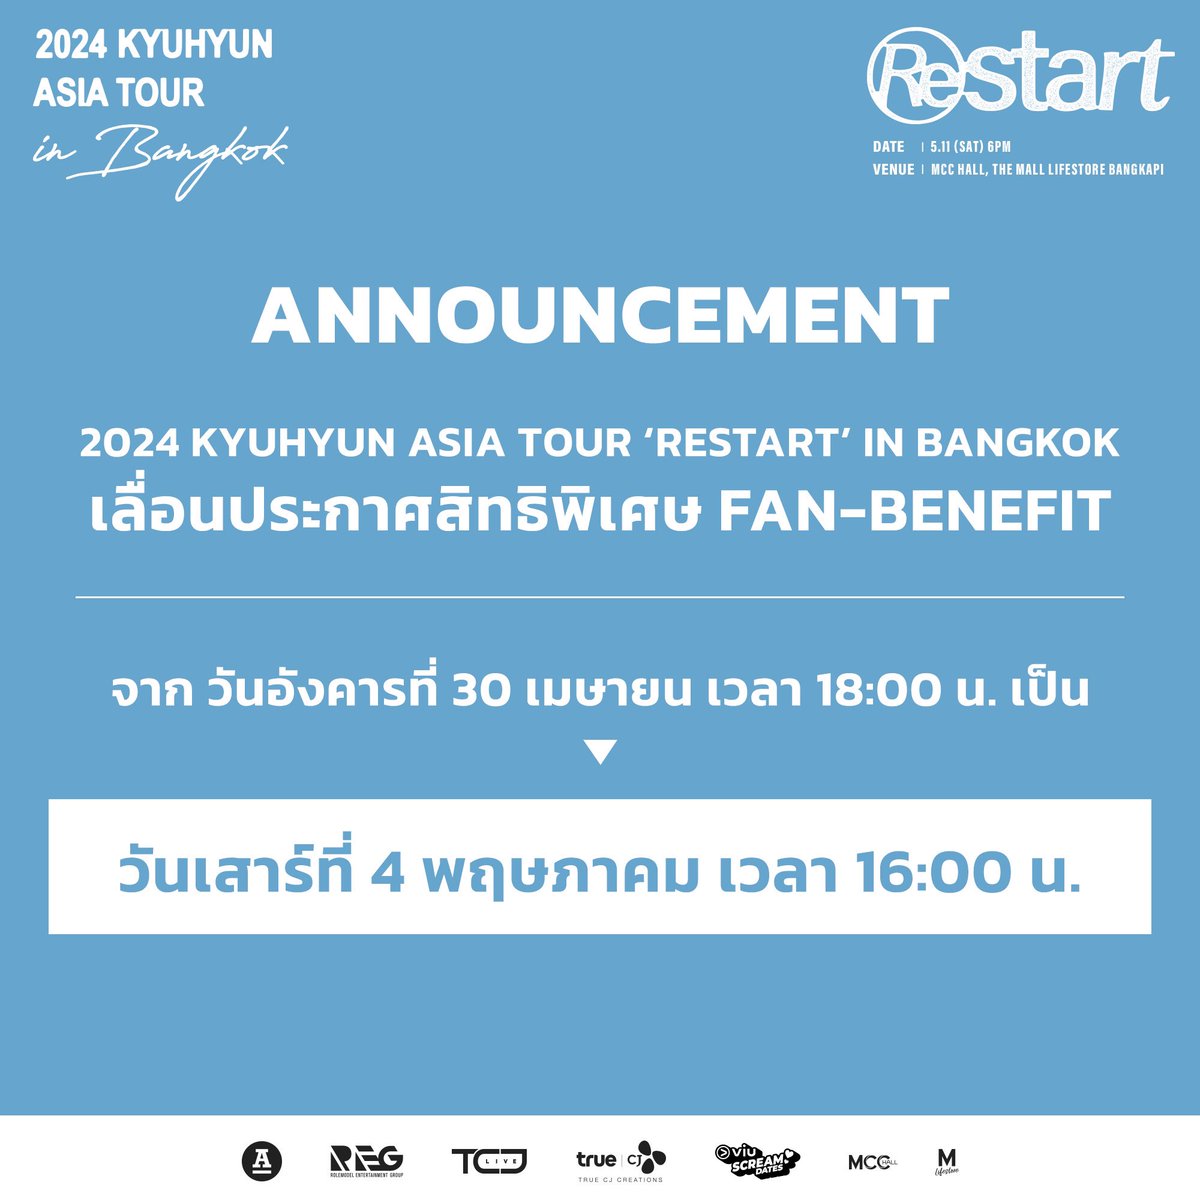 2024 KYUHYUN ASIA TOUR ‘Restart’ in Bangkok เลื่อนประกาศสิทธิพิเศษ FAN-BENEFIT 
 
จากวันอังคารที่ 30 เมษายน เวลา 18:00 น.
เป็น วันเสาร์ที่ 4 พฤษภาคม เวลา 16:00 น. 

เพื่อเป็นการขยายเวลาซื้อบัตรและรับสิทธิพิเศษ FAN-BENEFIT 

.
รายละเอียดการซื้อบัตร 2024 KYUHYUN ASIA TOUR ‘Restart’…